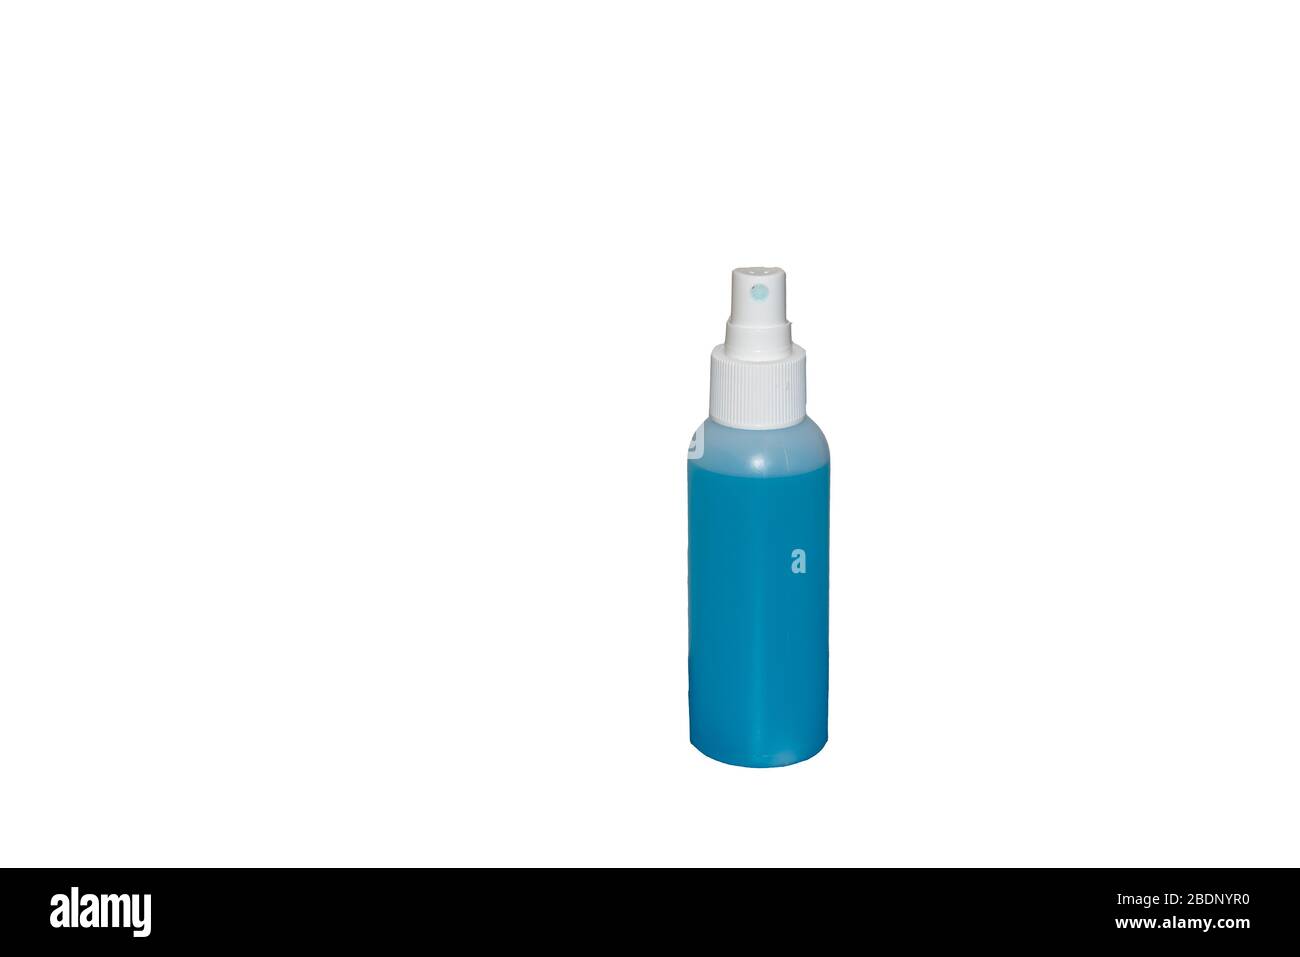 Piccola bottiglia di igienizzatore per mani per lavare le mani nella lotta contro il virus corona Foto Stock